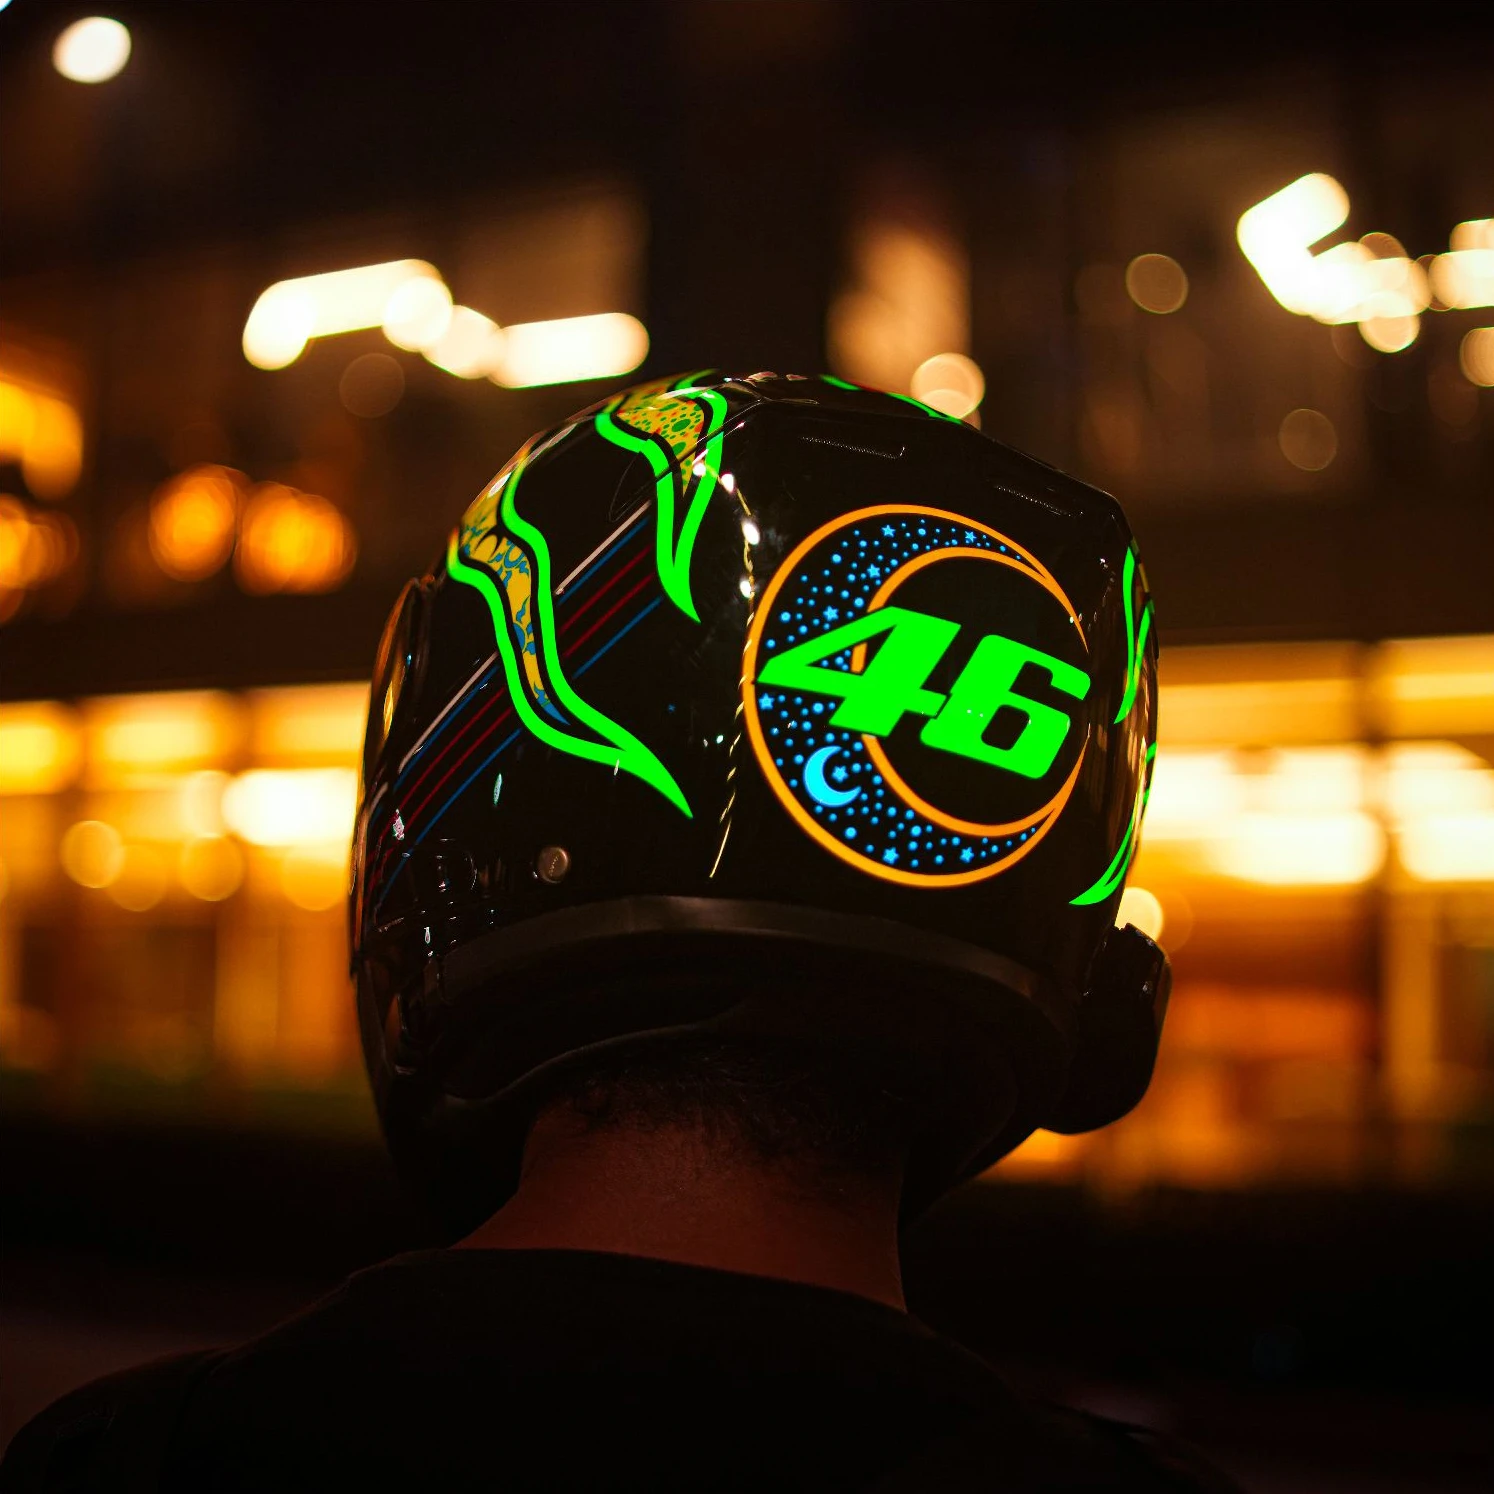 Valentino Rossi Theme Helmet